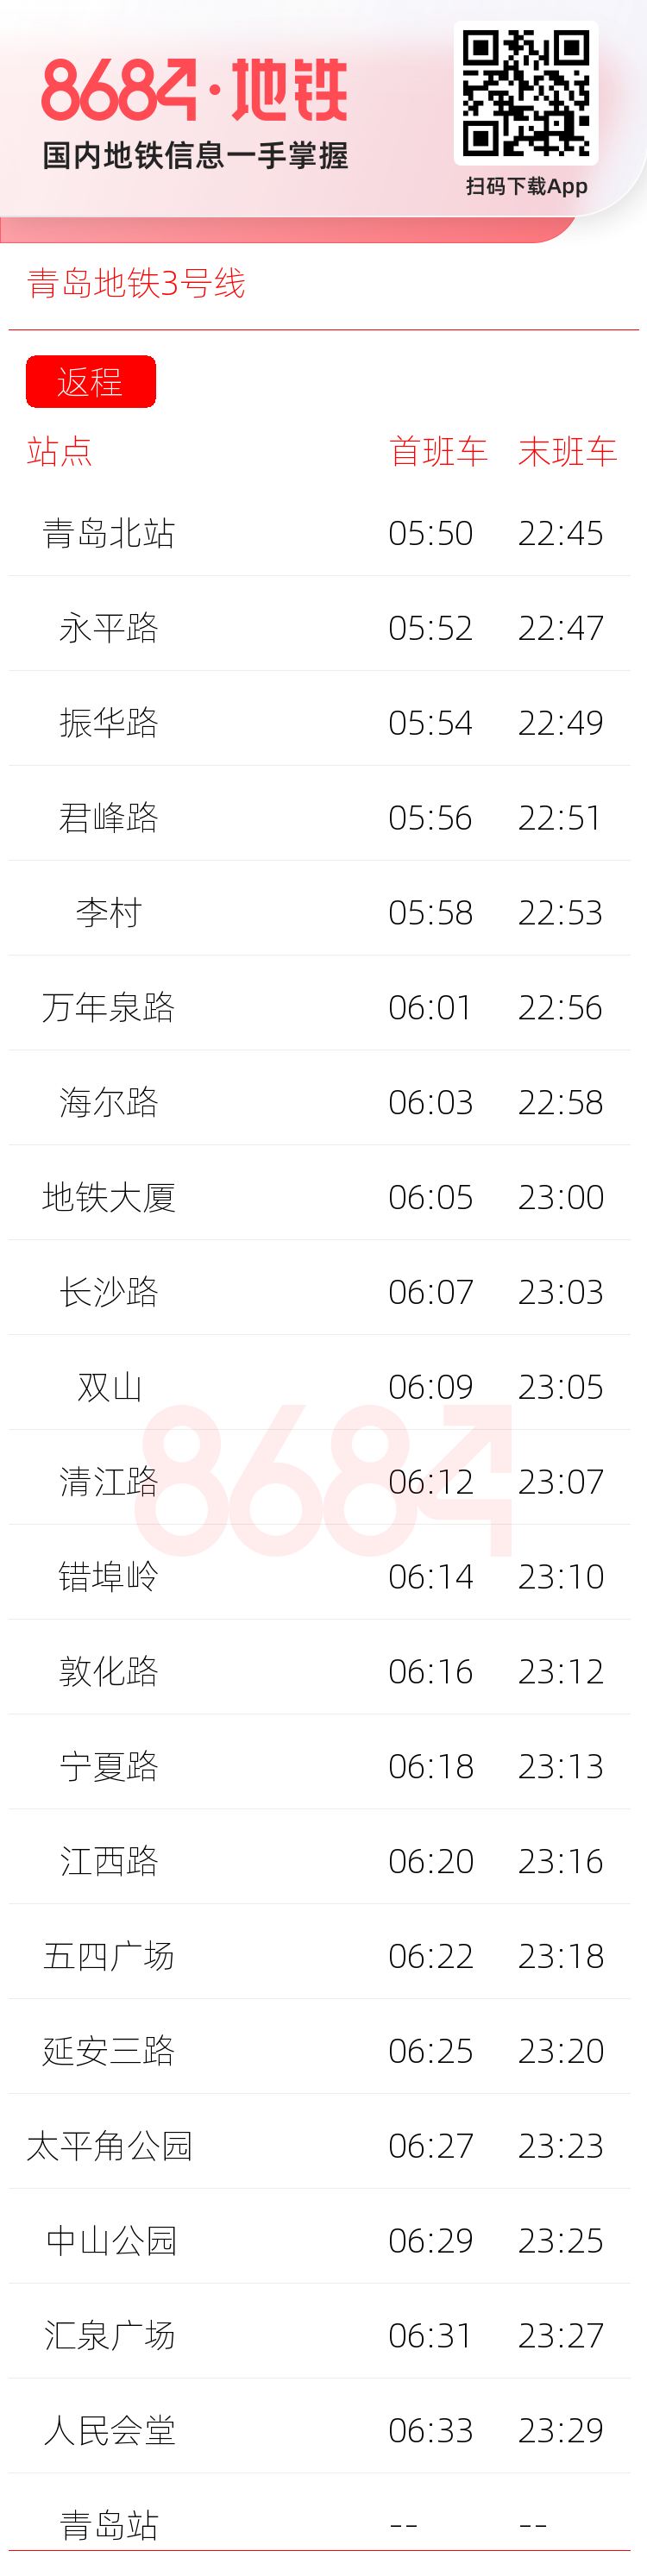 青岛地铁3号线运营时间表